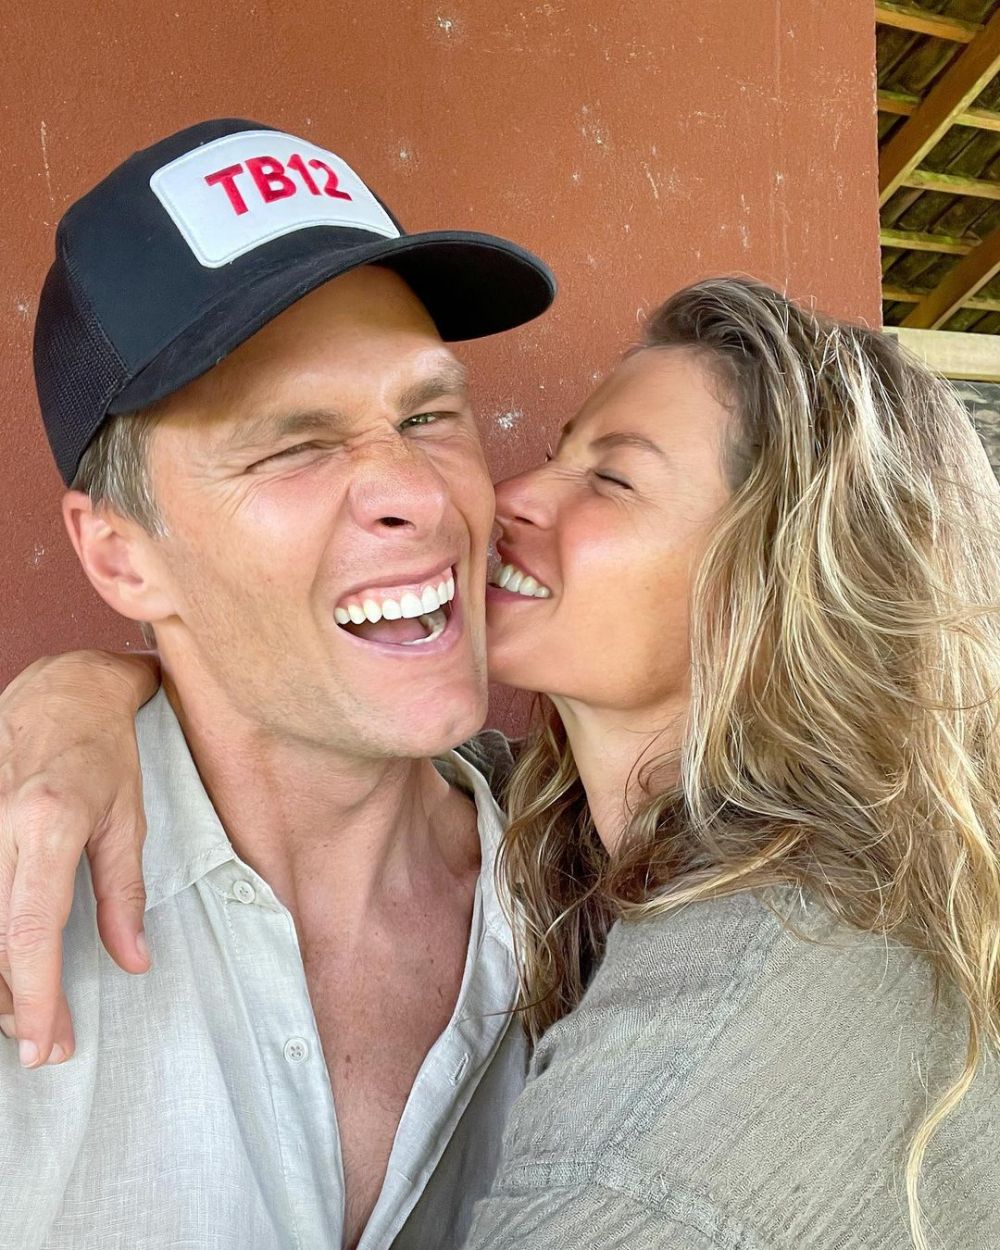 Tom Brady a divorțat de supermodelul Gisele Bundchen după 13 ani de căsnicie! Mesajul postat de starul din NFL_6